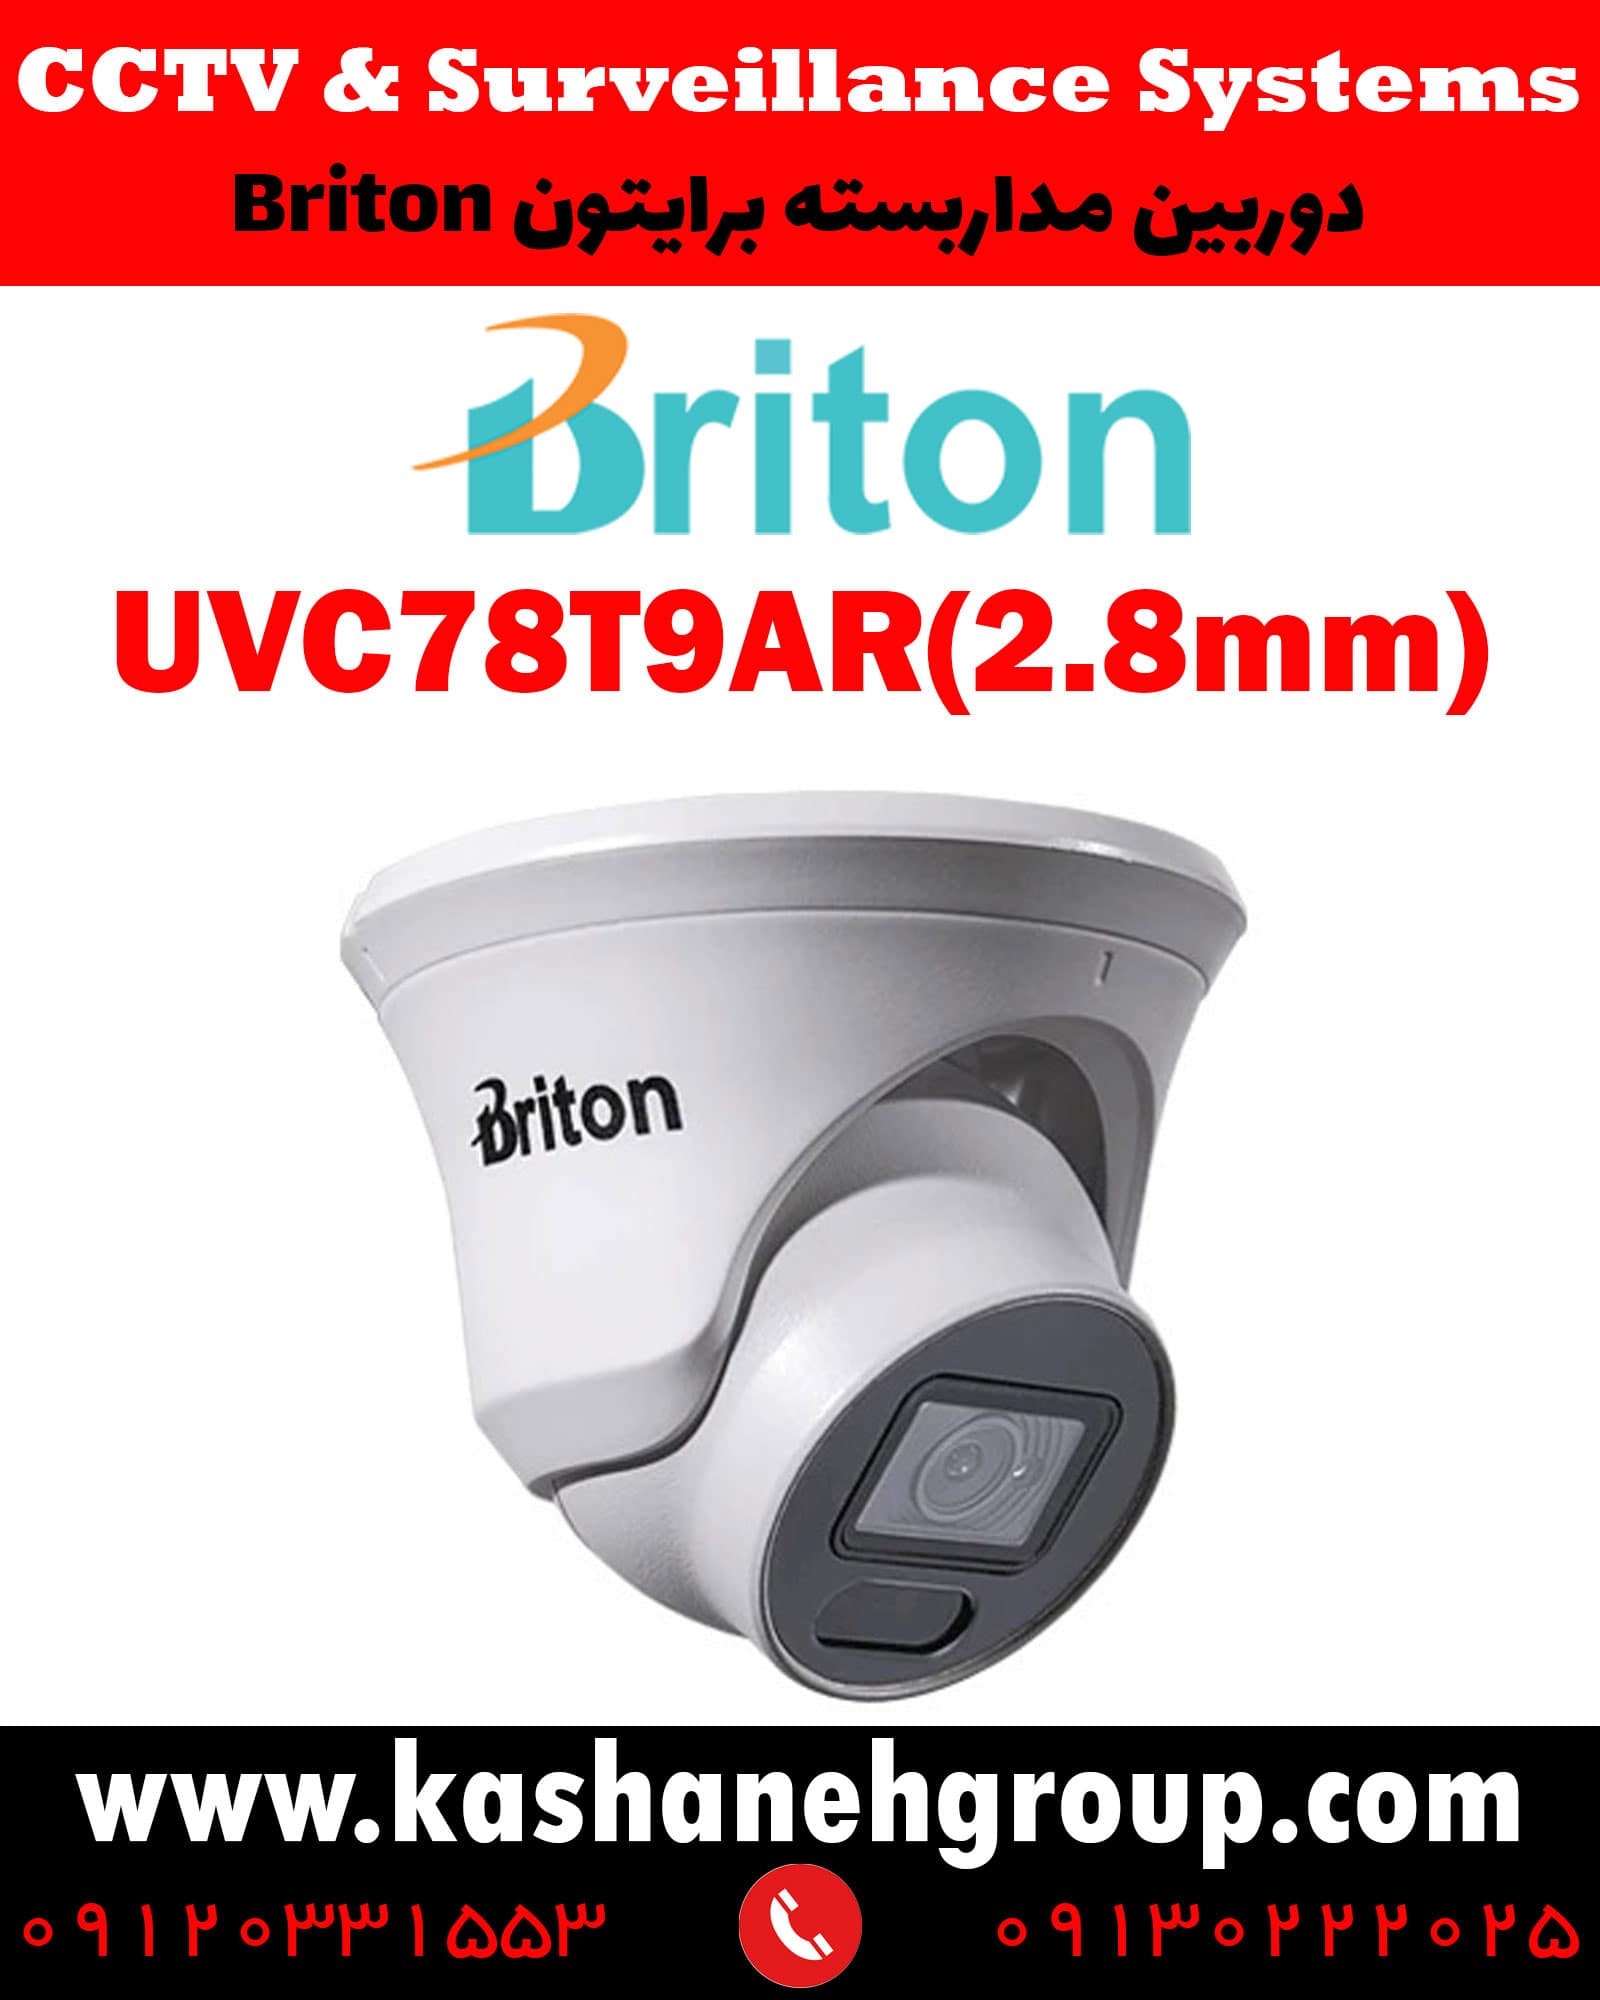 دوربین مداربسته UVC78T9AR(2.8MM)، دوربین مداربسته برایتون UVC78T9AR(2.8MM)، دوربین مداربسته Briton UVC78T9AR(2.8MM)، دوربین برایتون UVC78T9AR(2.8MM)، قیمت دوربین برایتون، نرم افزار برایتون، تعمیر دوربین برایتون، نمایندگی برایتون، نماینده برایتون، قیمت دوربین برایتون، مشخصات دوربین UVC78T9AR(2.8MM)، قیمت دوربین برایتون UVC78T9AR(2.8MM)، قیمت دوربین UVC78T9AR(2.8MM) برایتون، پک دوربین برایتون، پک دوربین مداربسته برایتون، دوربین Briton، دوربین مداربسته برایتون Briton UVC78T9AR(2.8MM) ، نماینده دوربین Briton، نمایندگی دوربین Briton، نرم افزار موبایل دوربین مداربسته Briton،